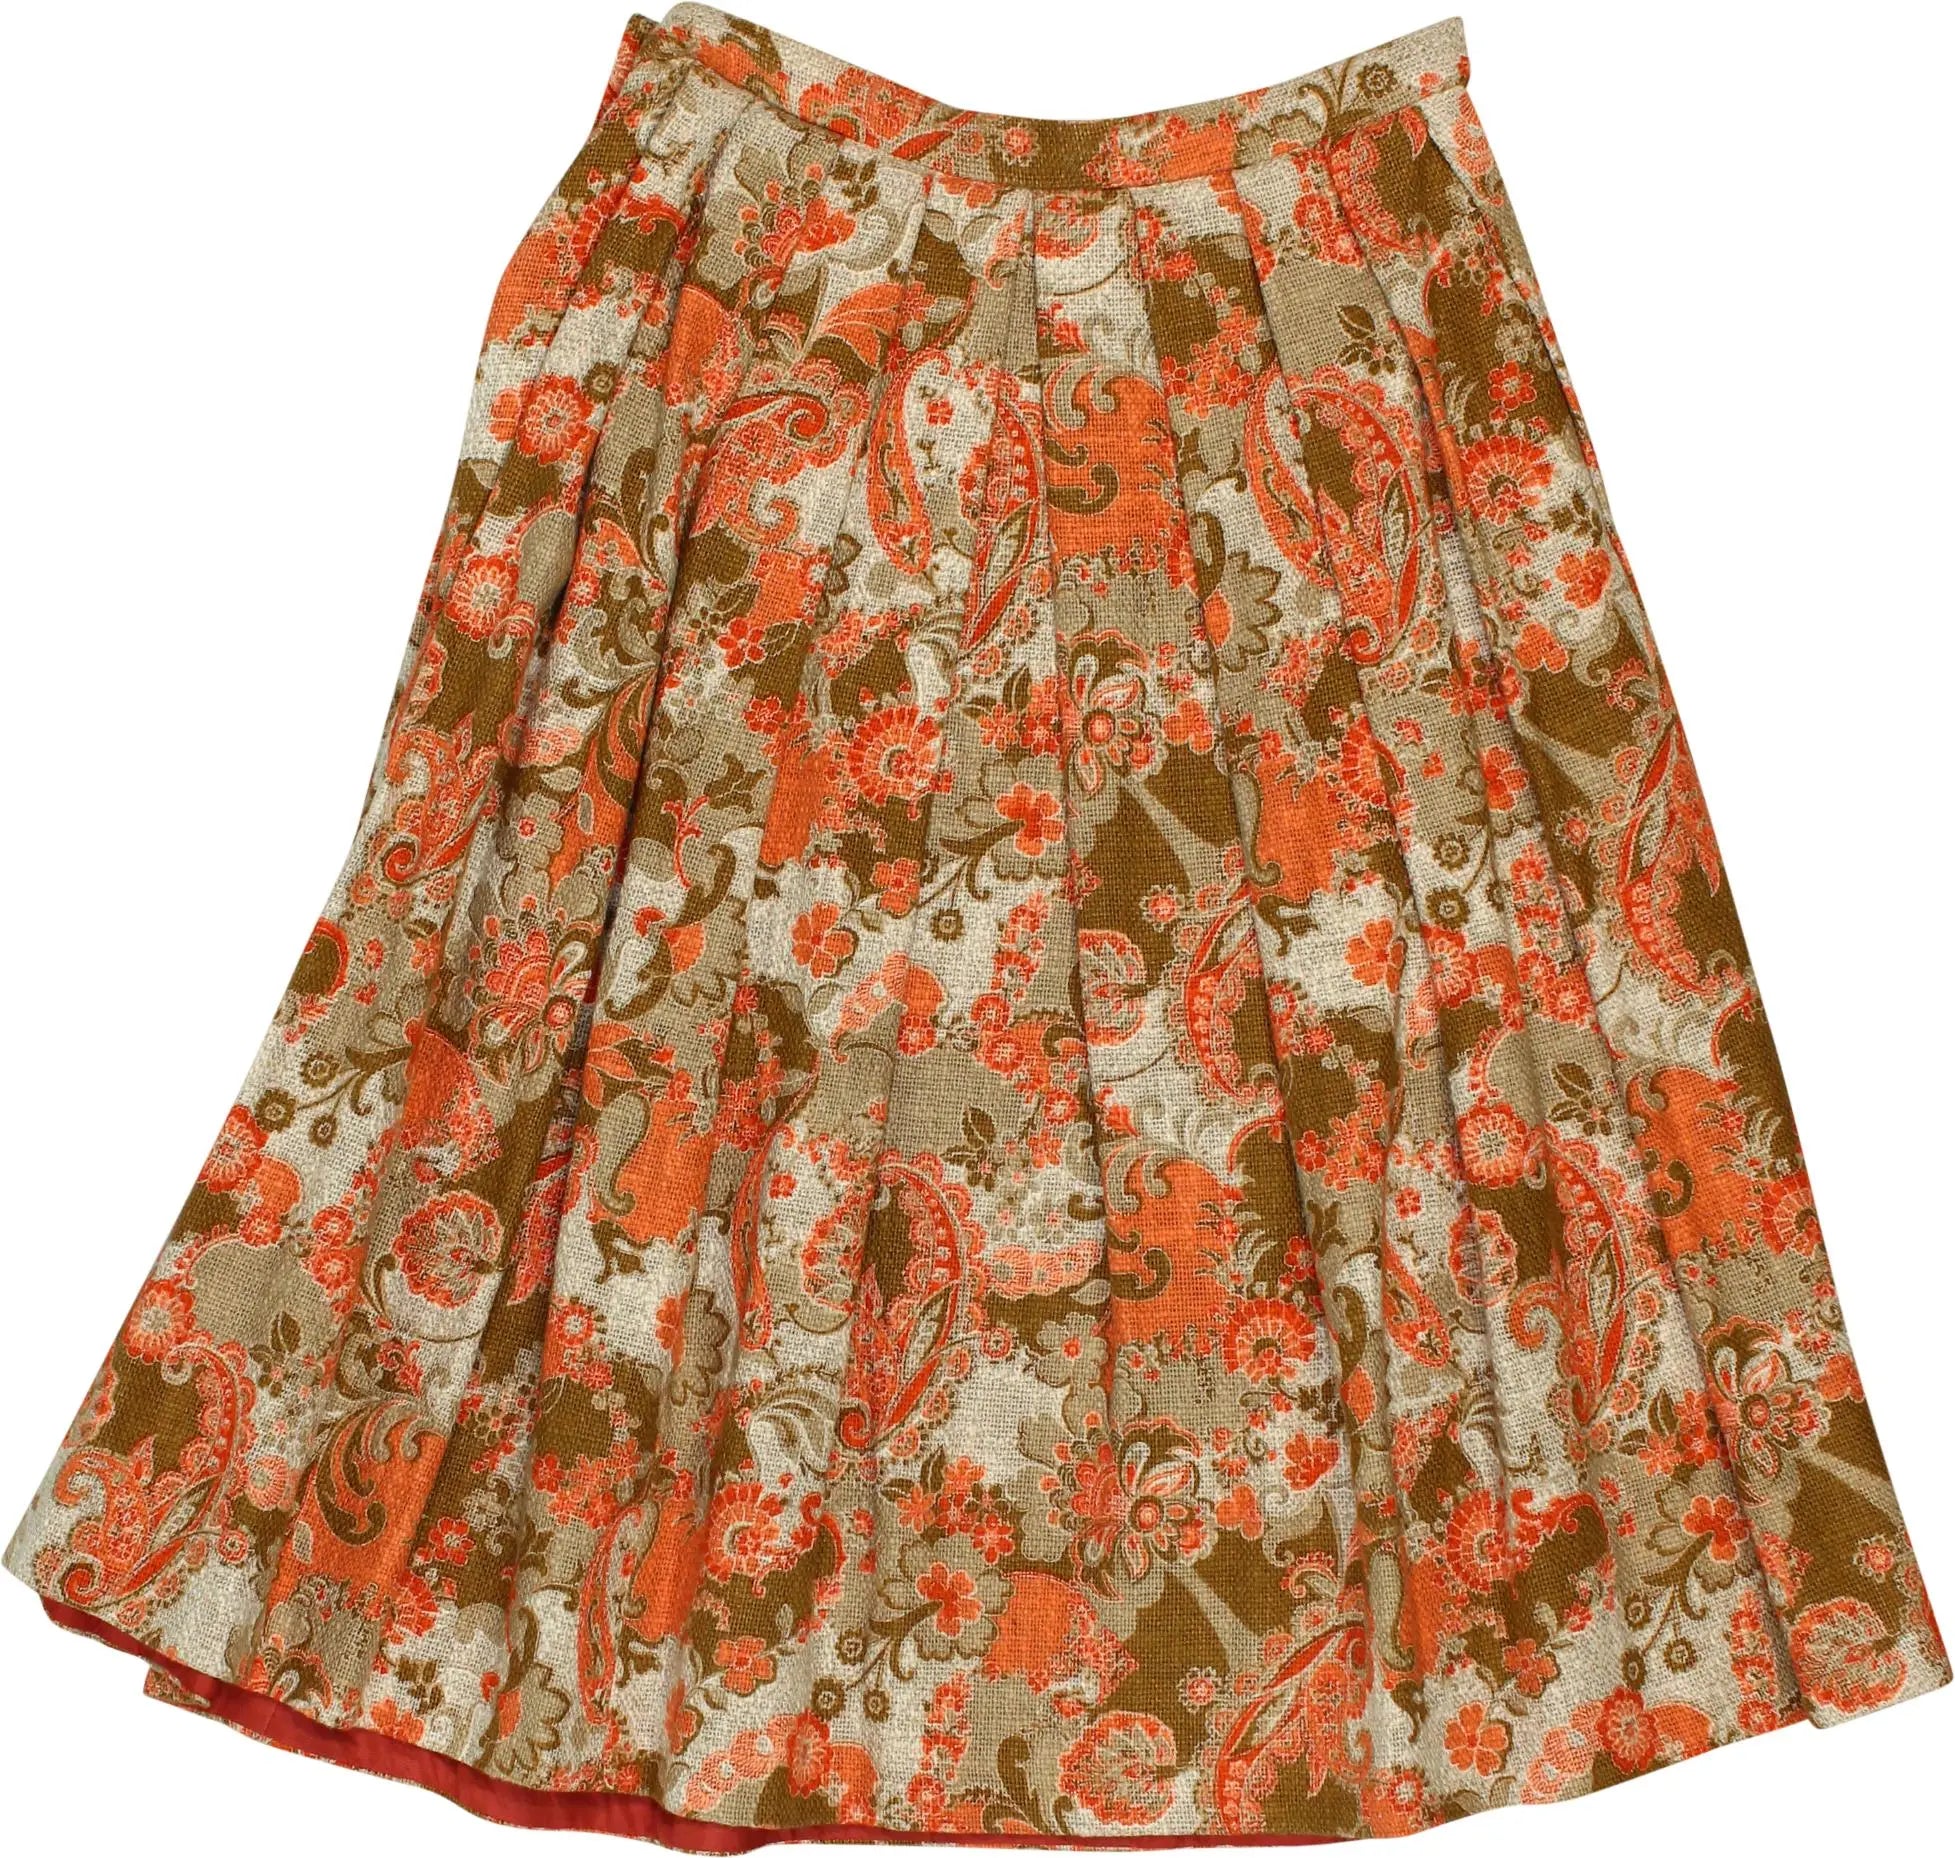 Kobler Dirndl - Midi Skirt- ThriftTale.com - Vintage and second handclothing